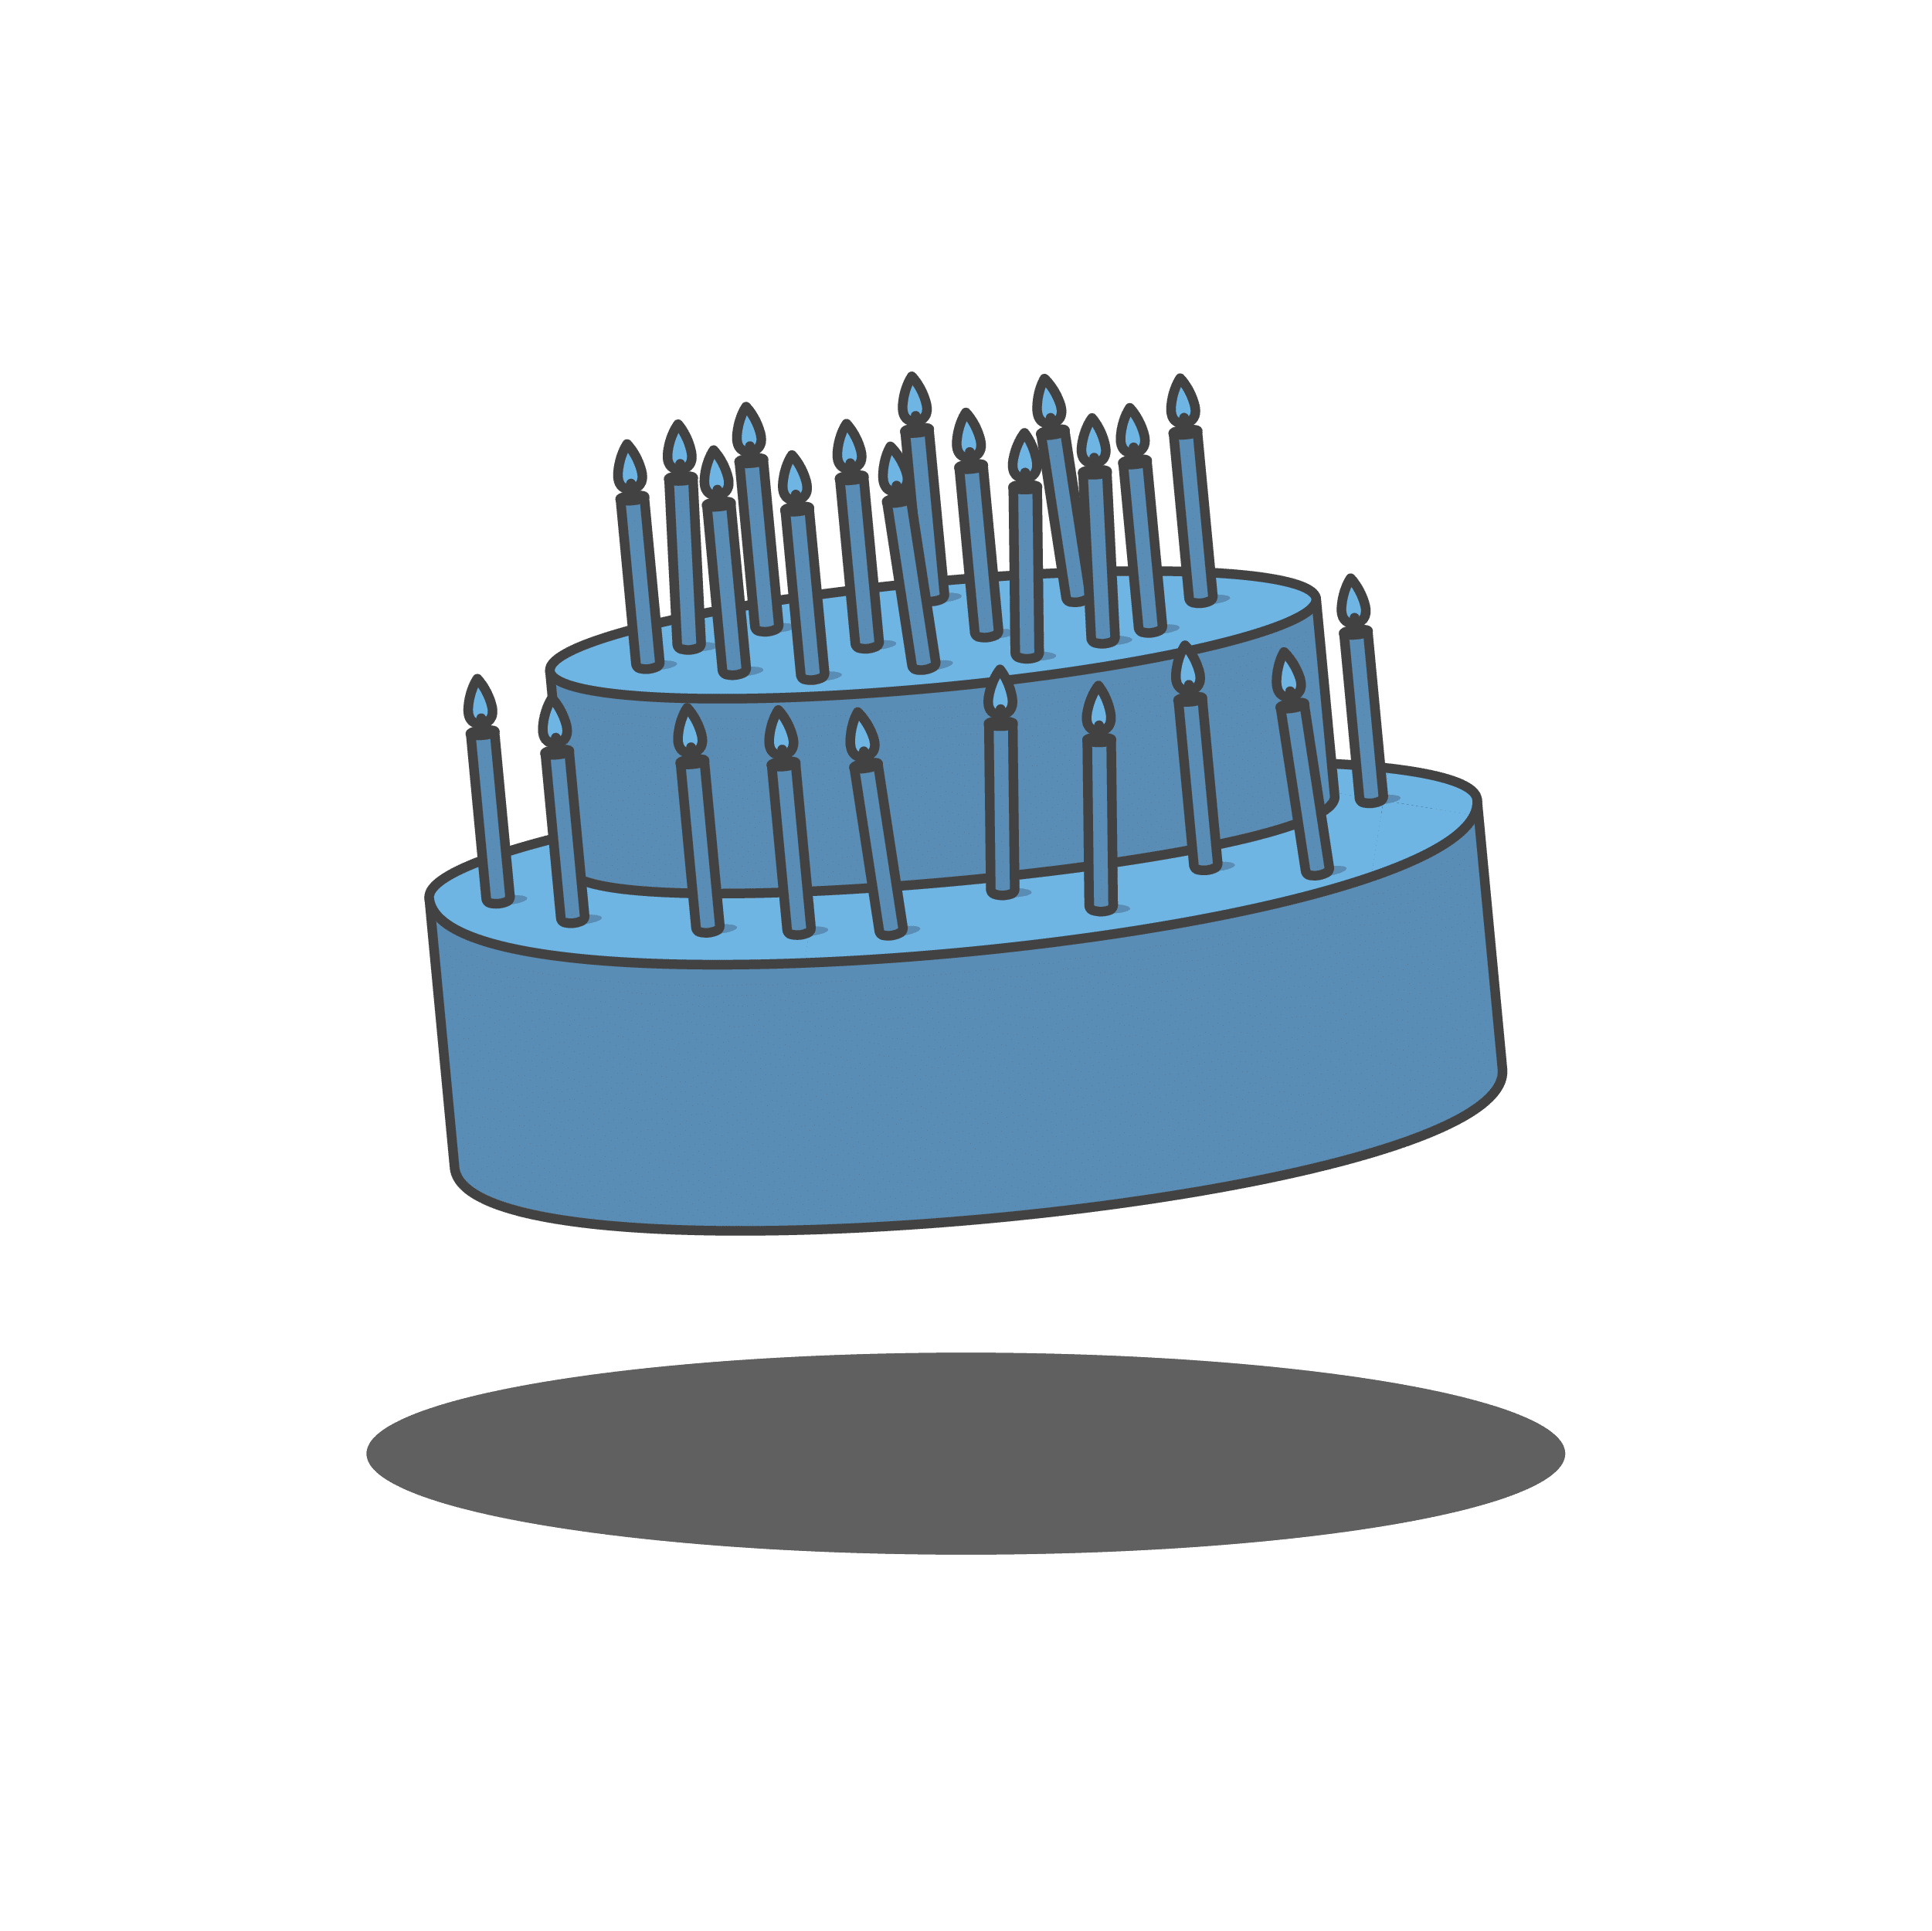 graphic of birthday cake